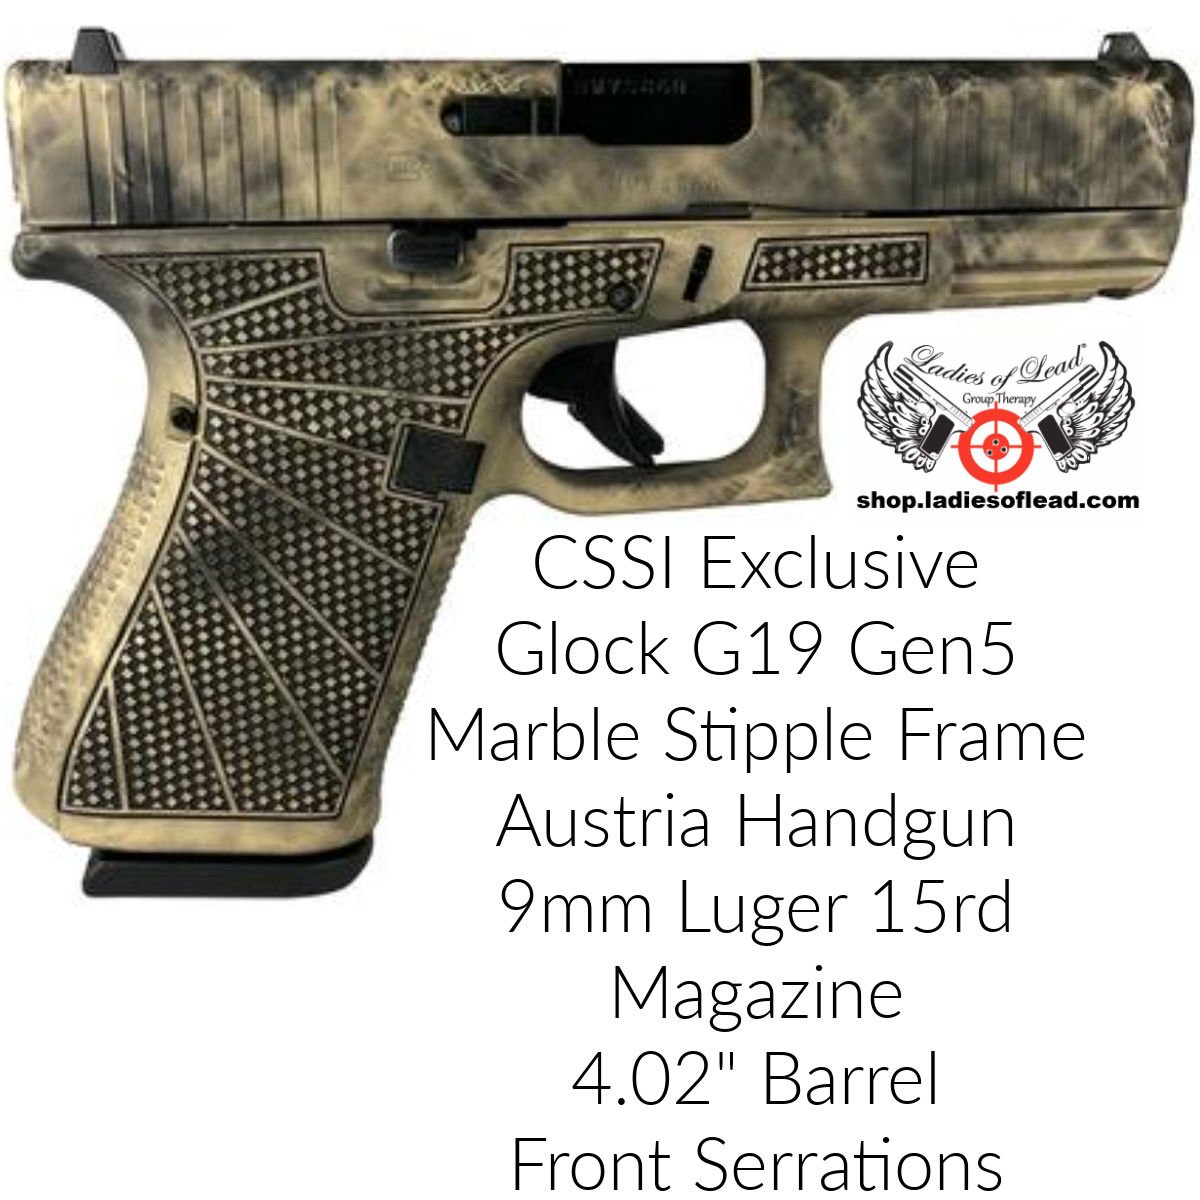 Glock 19 Gen 5 Marble Stipple Frame.jpeg